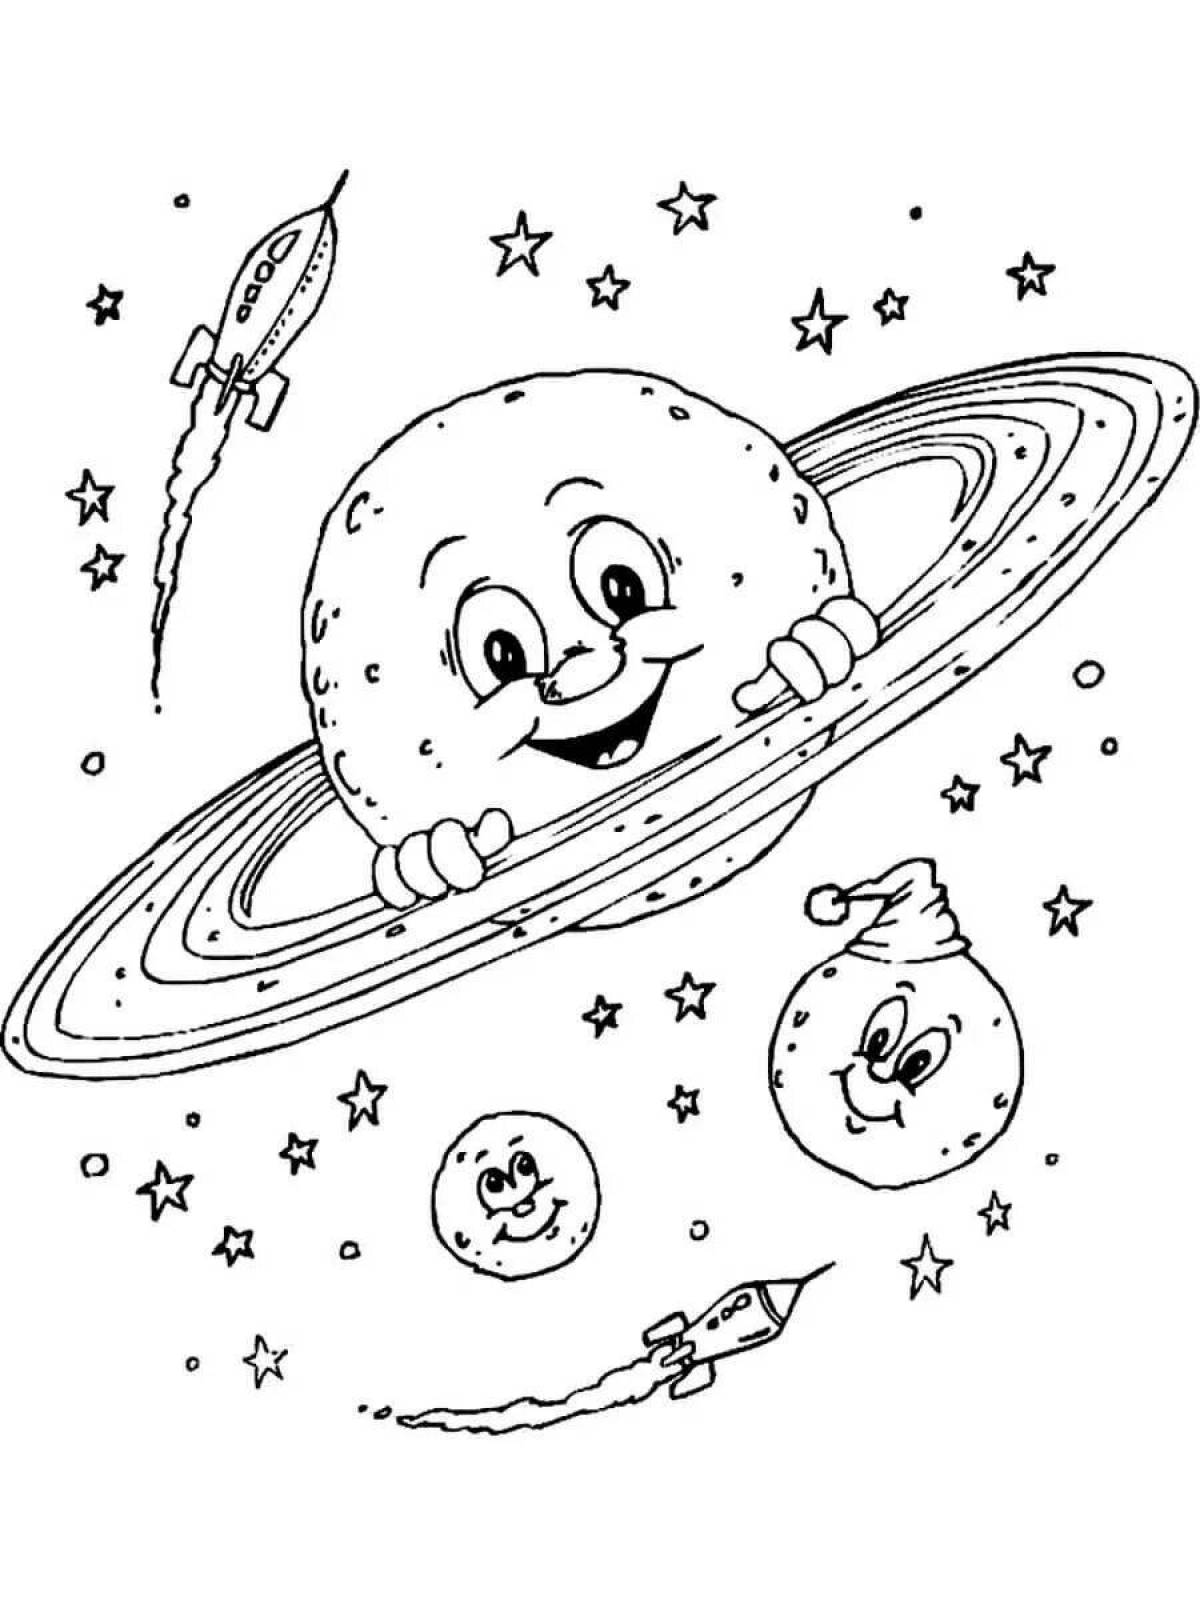 Космос раскраска для детей 3 4 лет. Космос раскраска для детей. Раскраска. В космосе. Раскраска космос и планеты для детей. Раскраска на тему космос для детей.